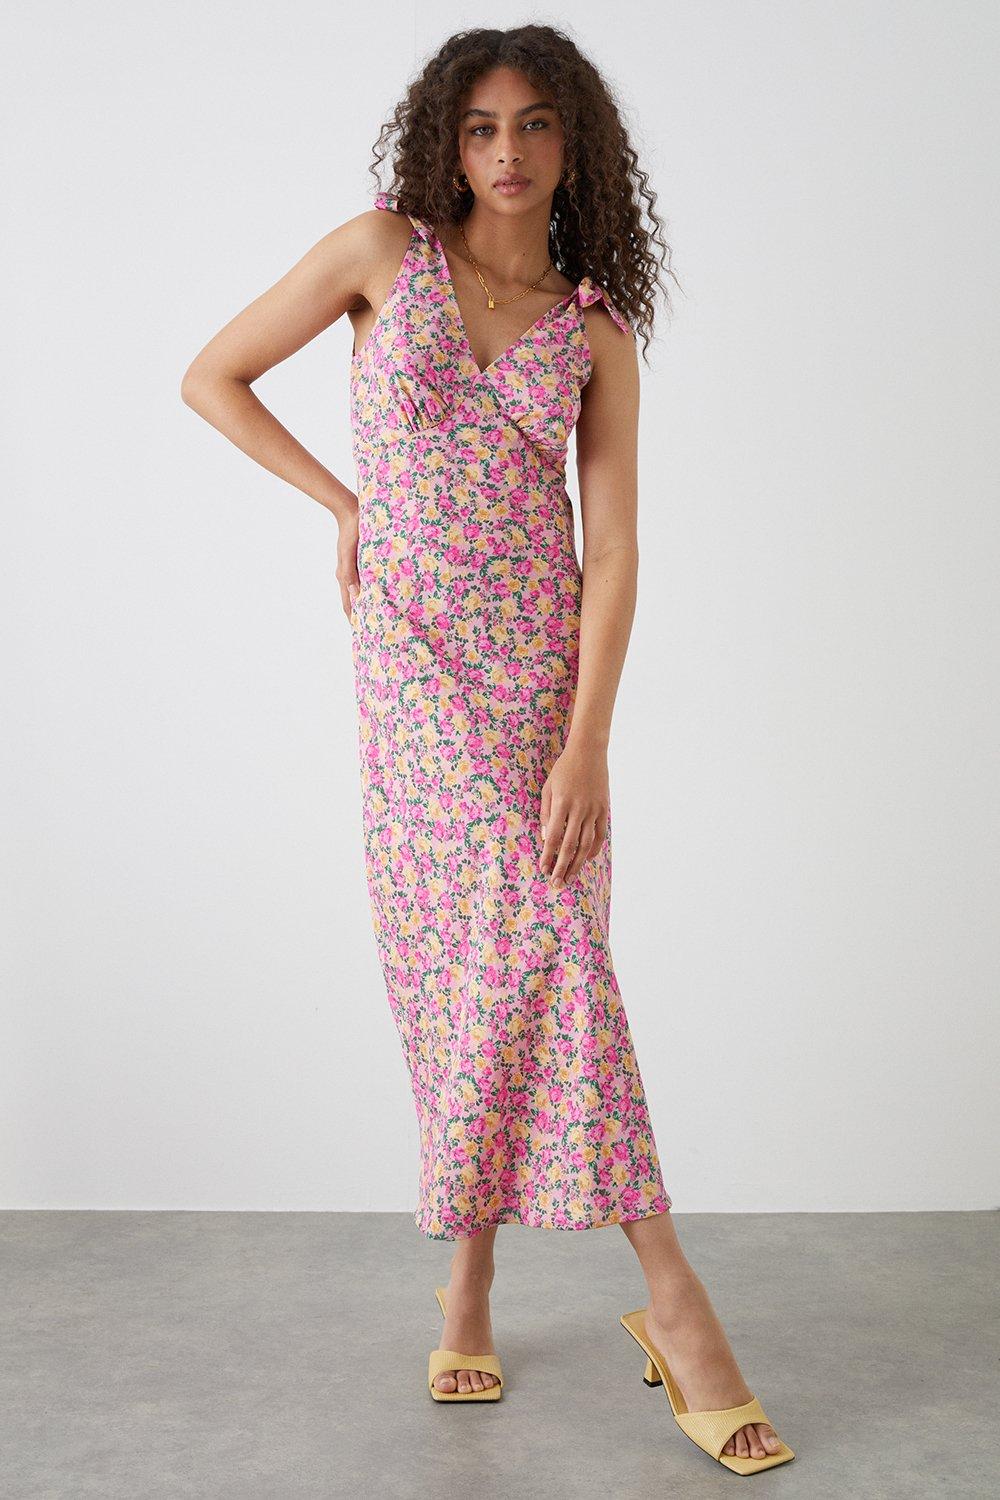 Women’s Tall Pink Floral Print Bias Cut Tie Shoulder Midi Dress - 12